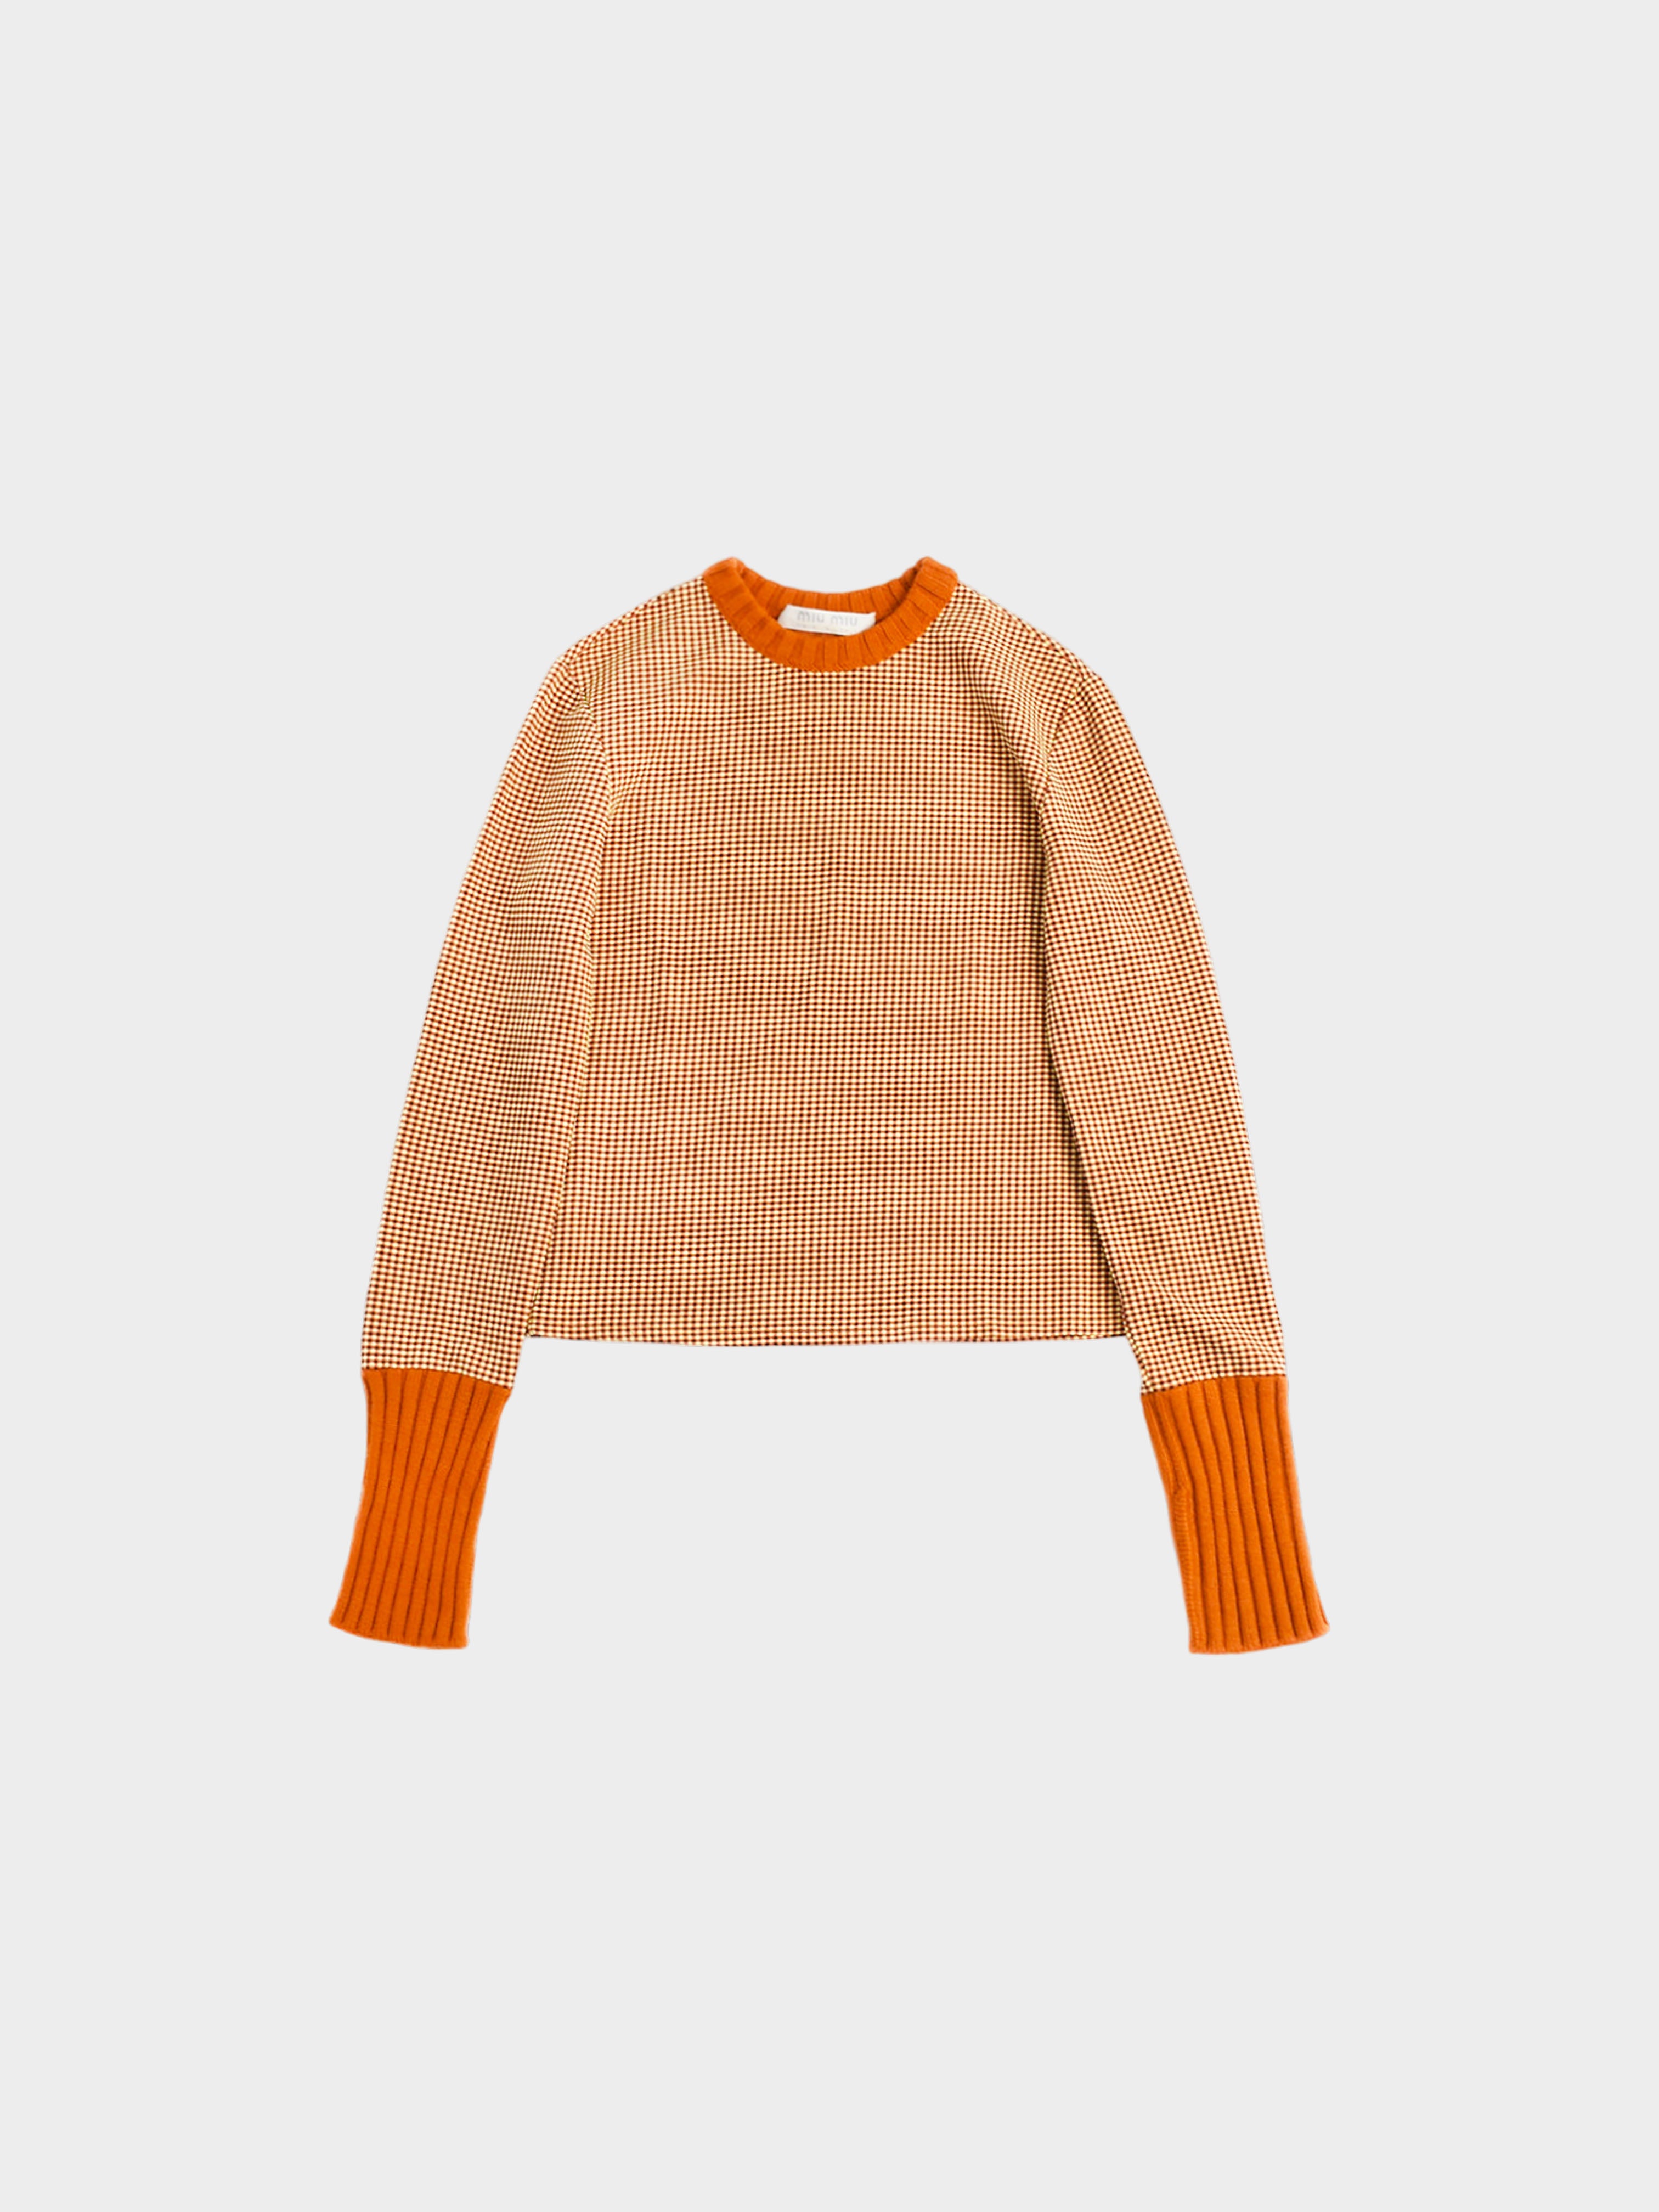 Miu Miu FW 1999 Orange Sweater